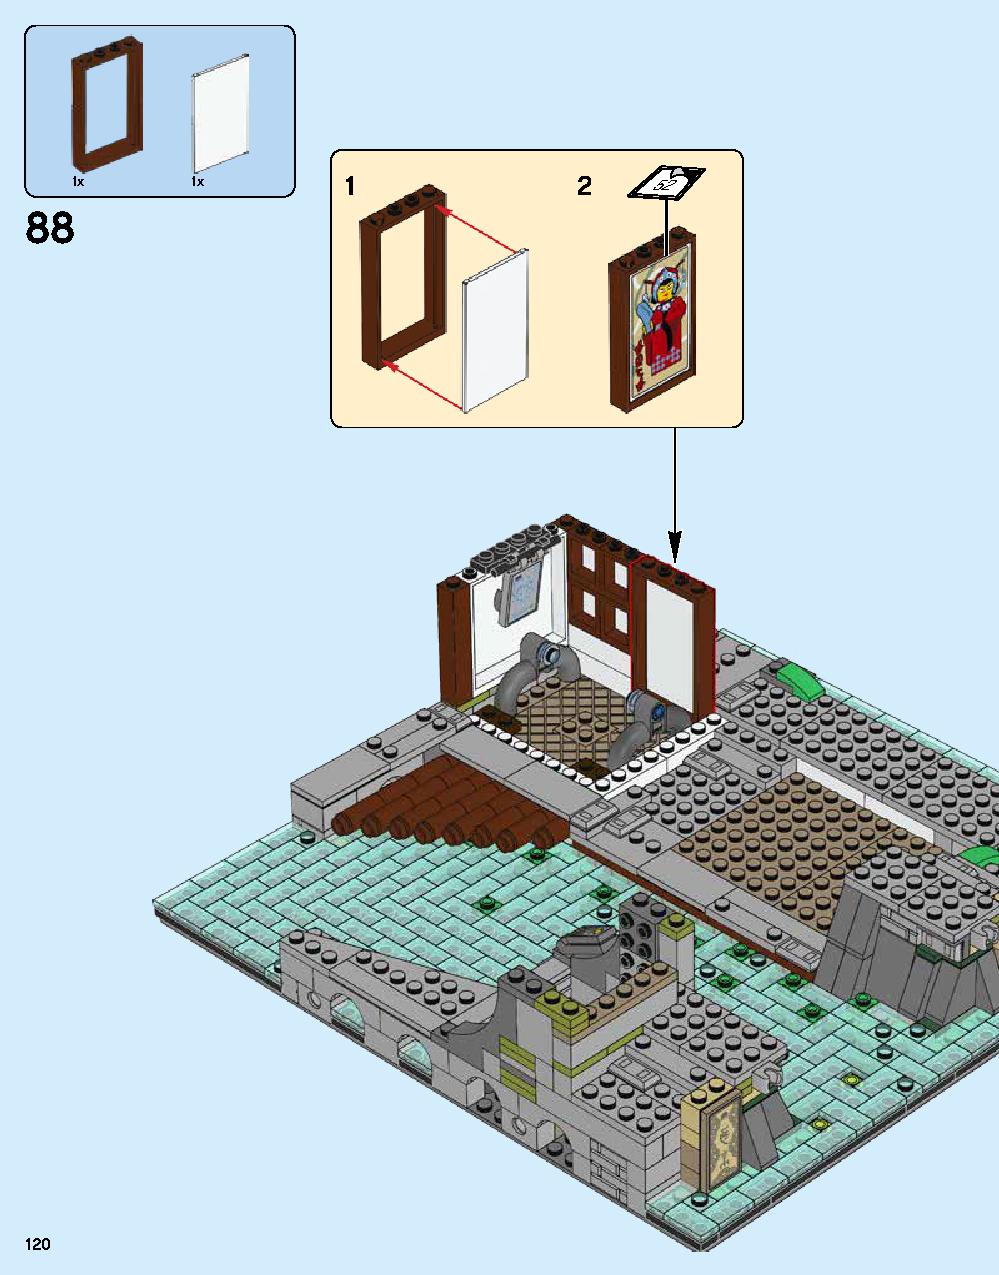 ニンジャゴー シティ 70620 レゴの商品情報 レゴの説明書・組立方法 120 page